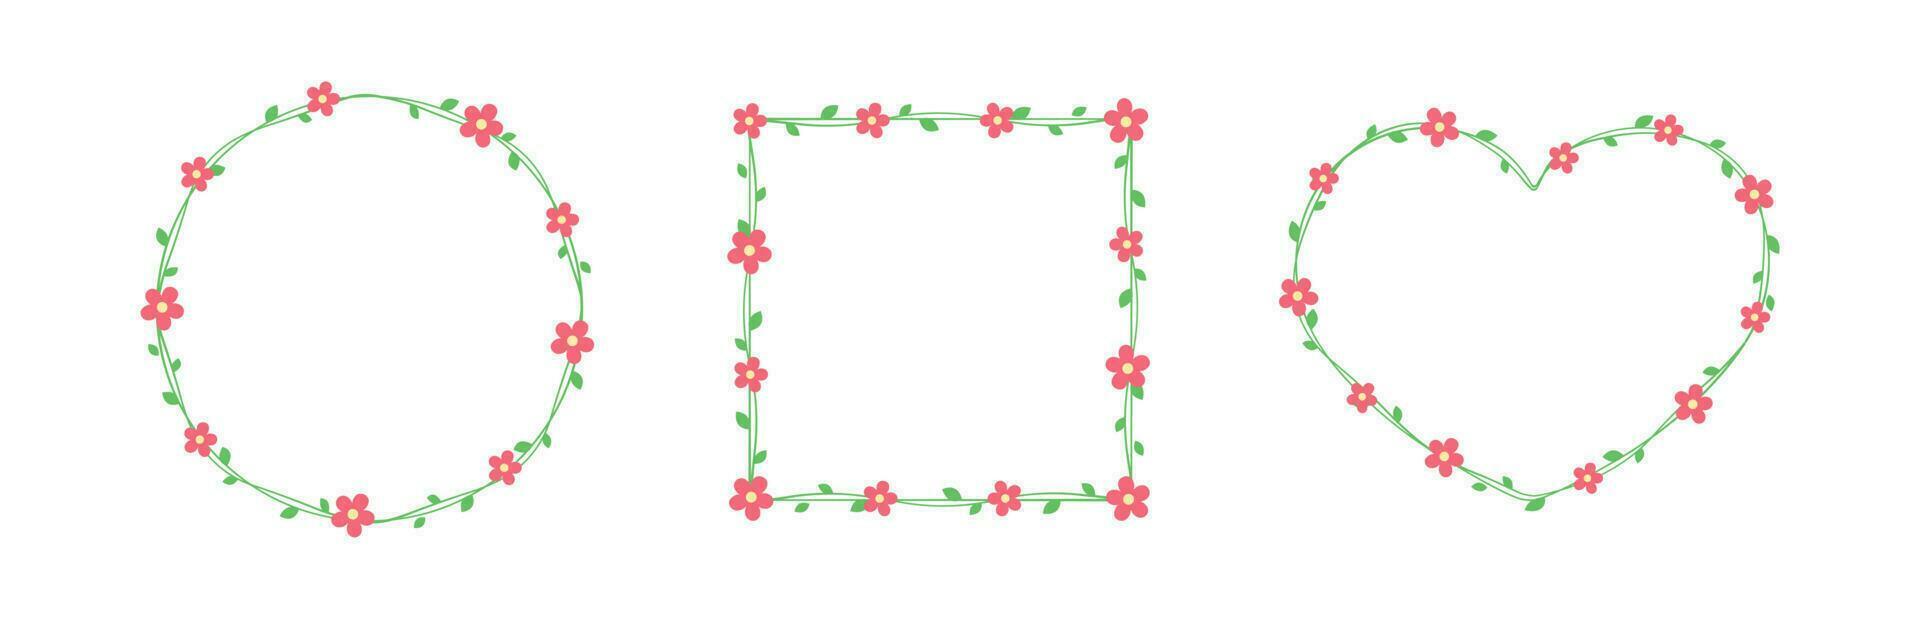 rood bloemen met groen bladeren kaders en borders set, bloemen botanisch ontwerp element vector illustratie